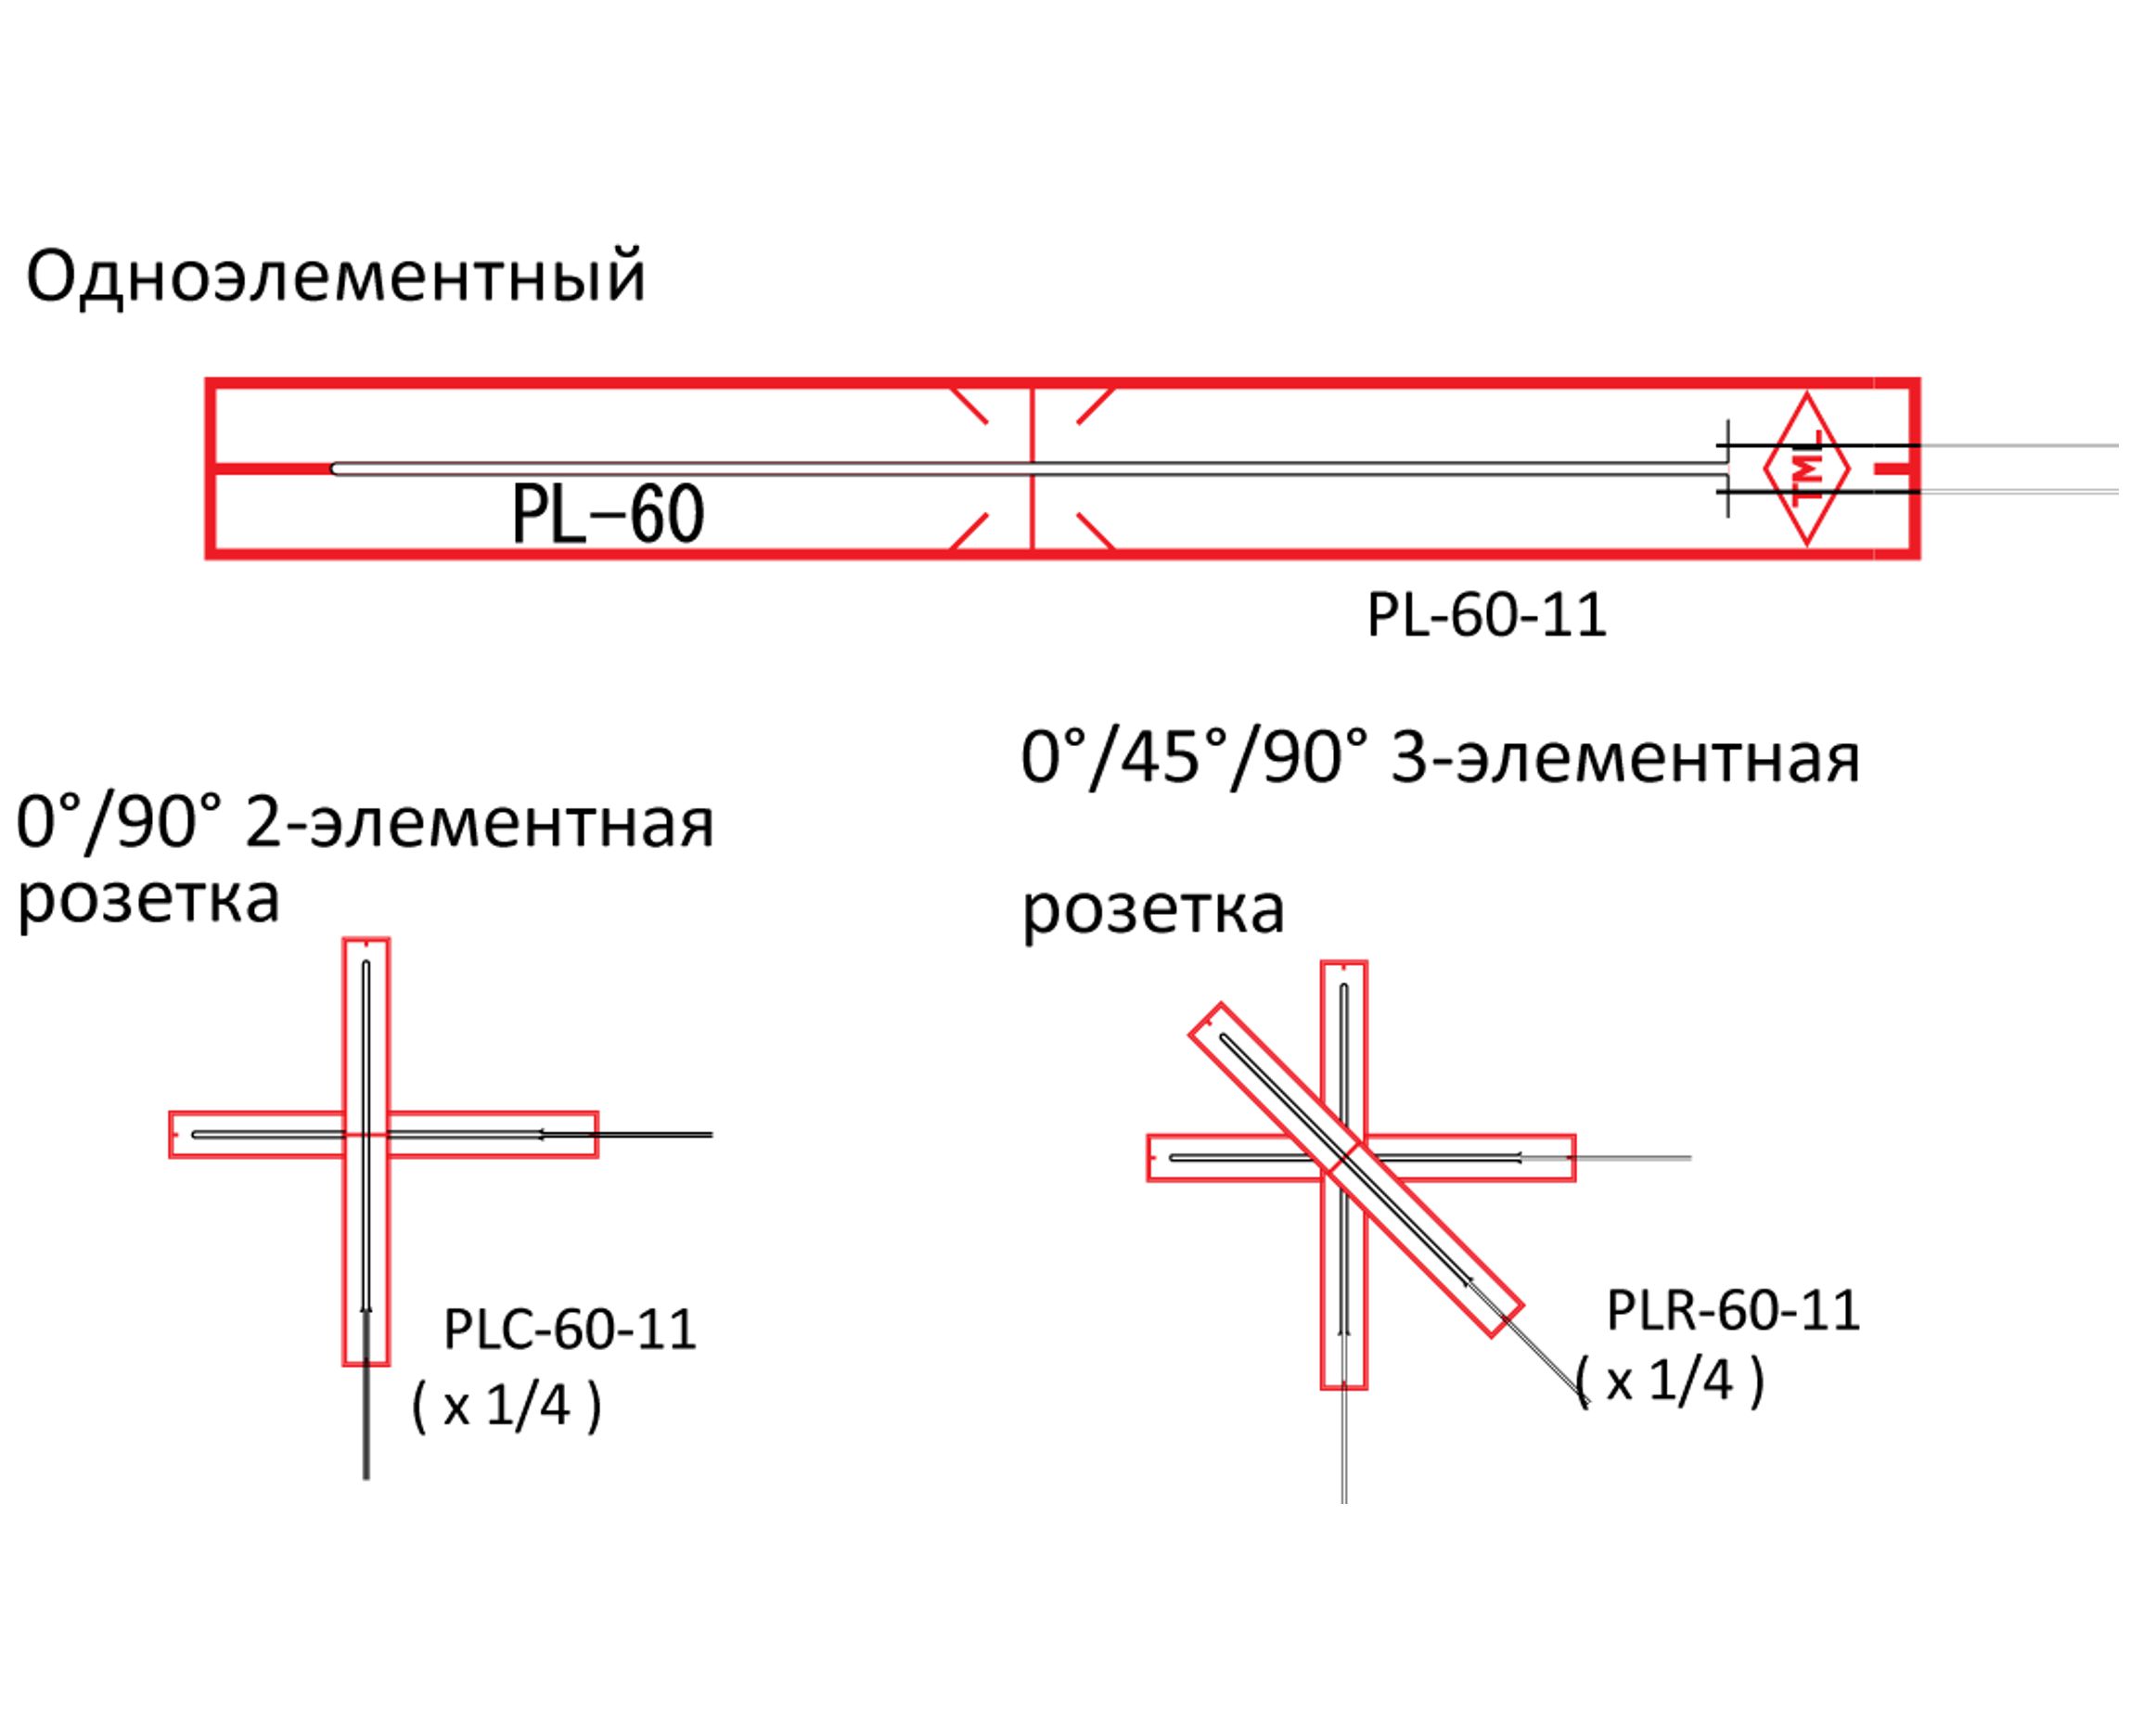 Тензорезисторы PL/PFL для бетона и универсальные